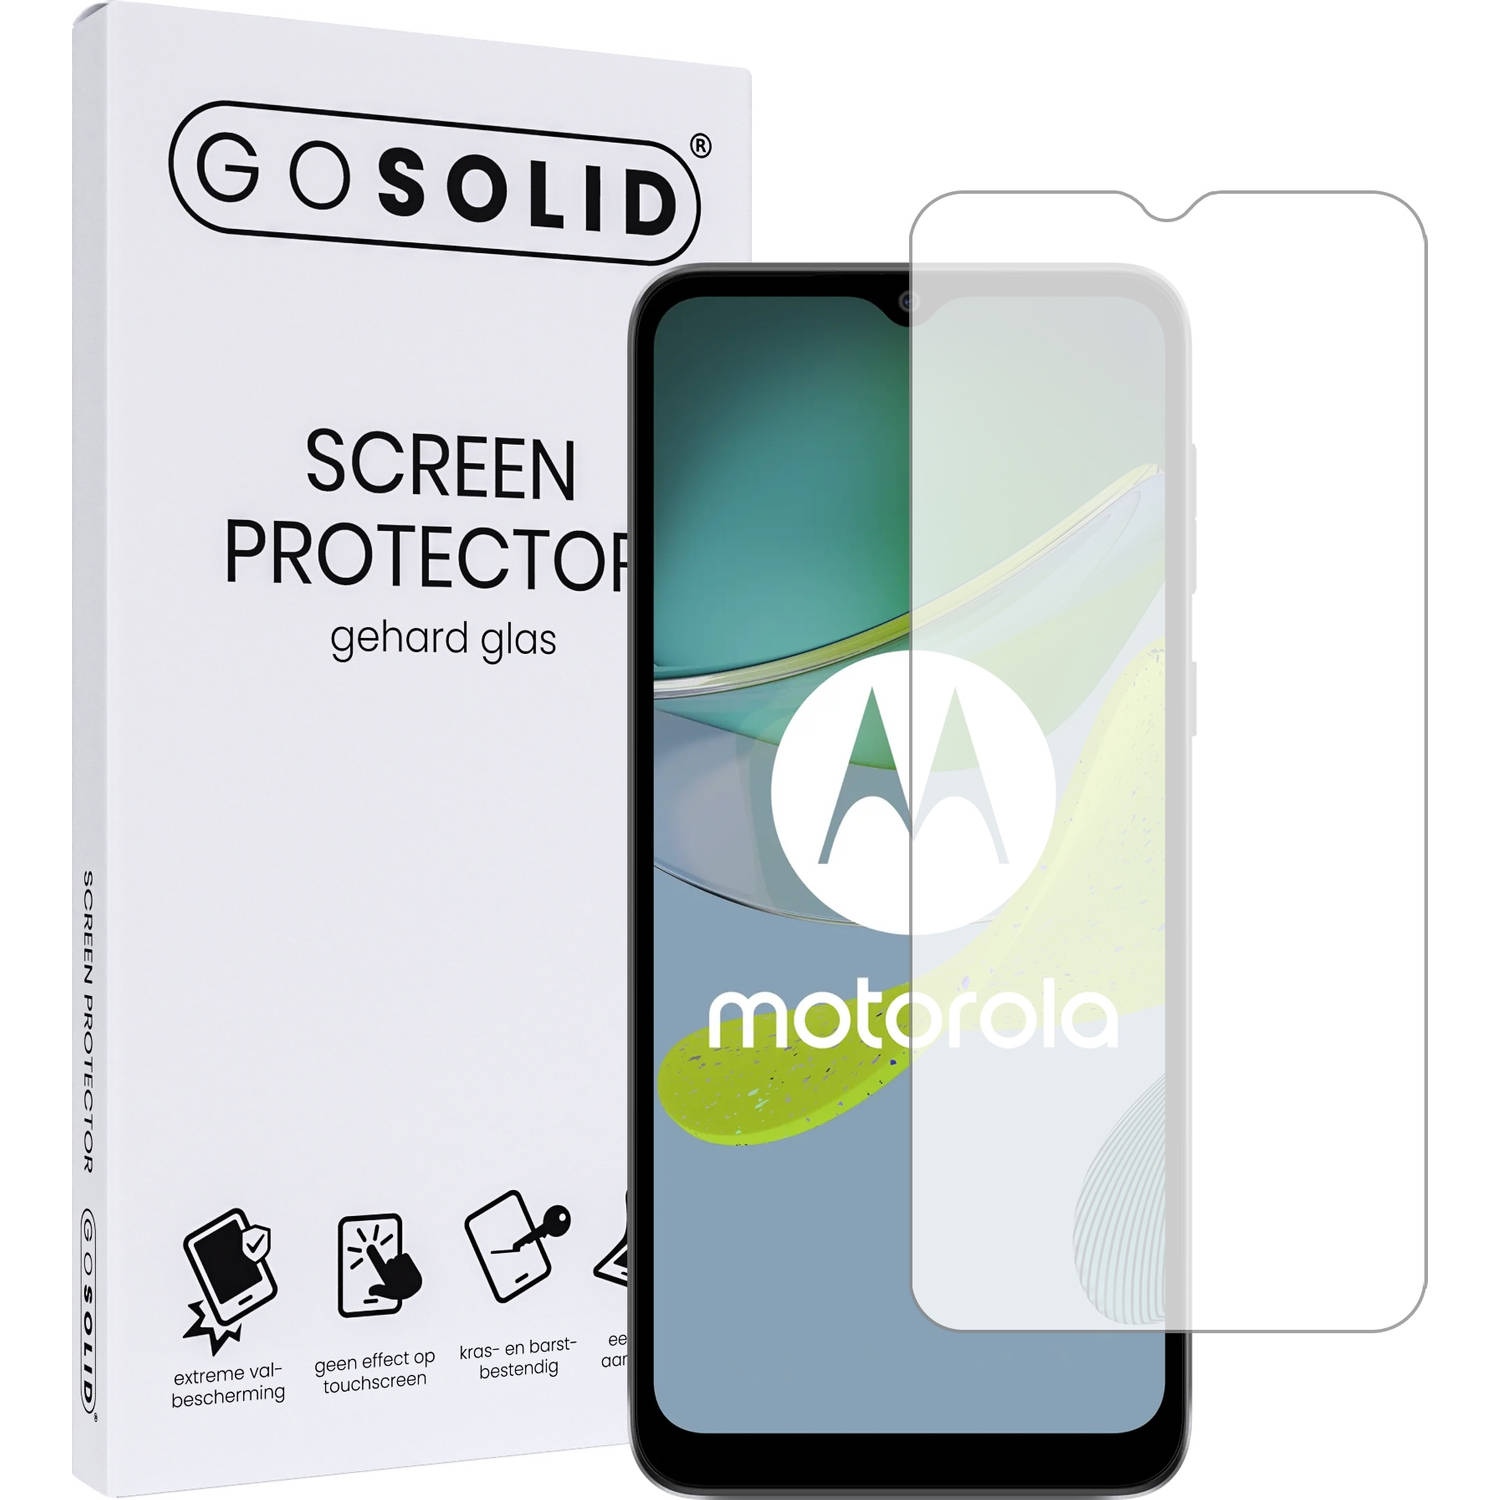 GO SOLID! Screenprotector voor Motorola moto E22 gehard glas